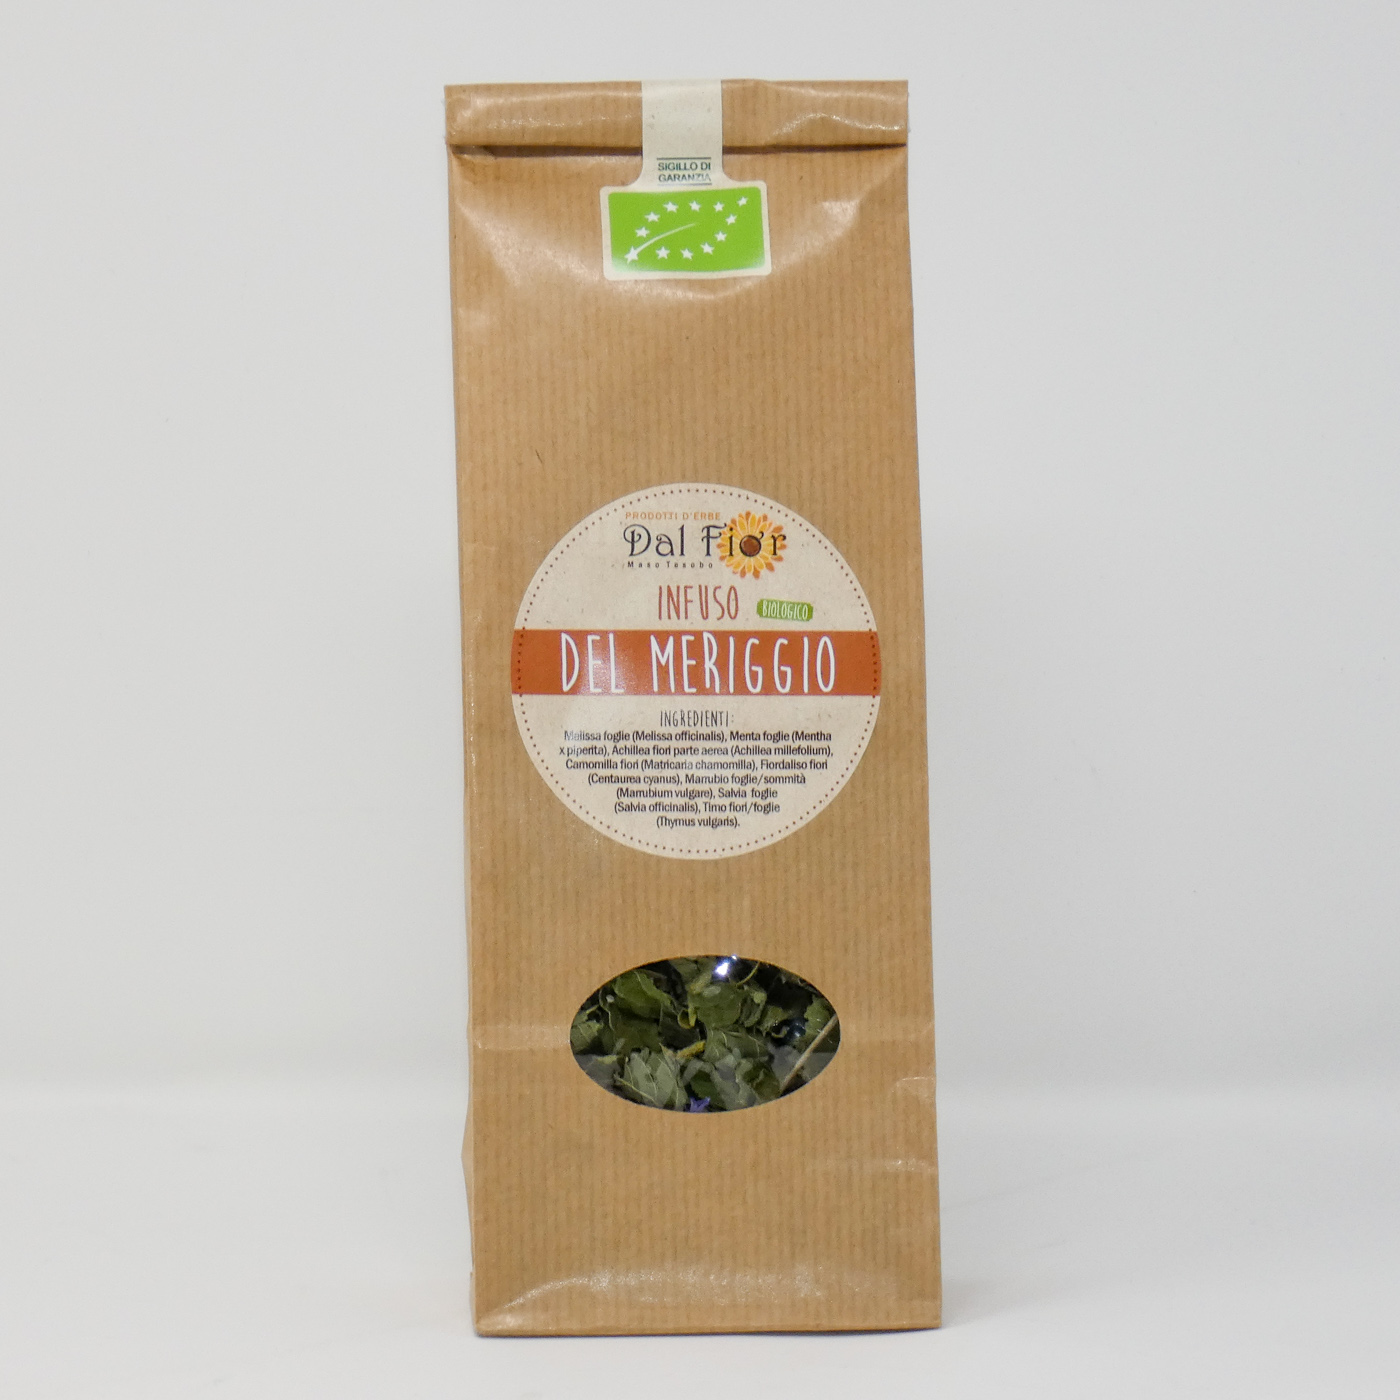 Tè verde in foglie dall'Himalaya, naturale, biologico, sacchetto da 100 gr